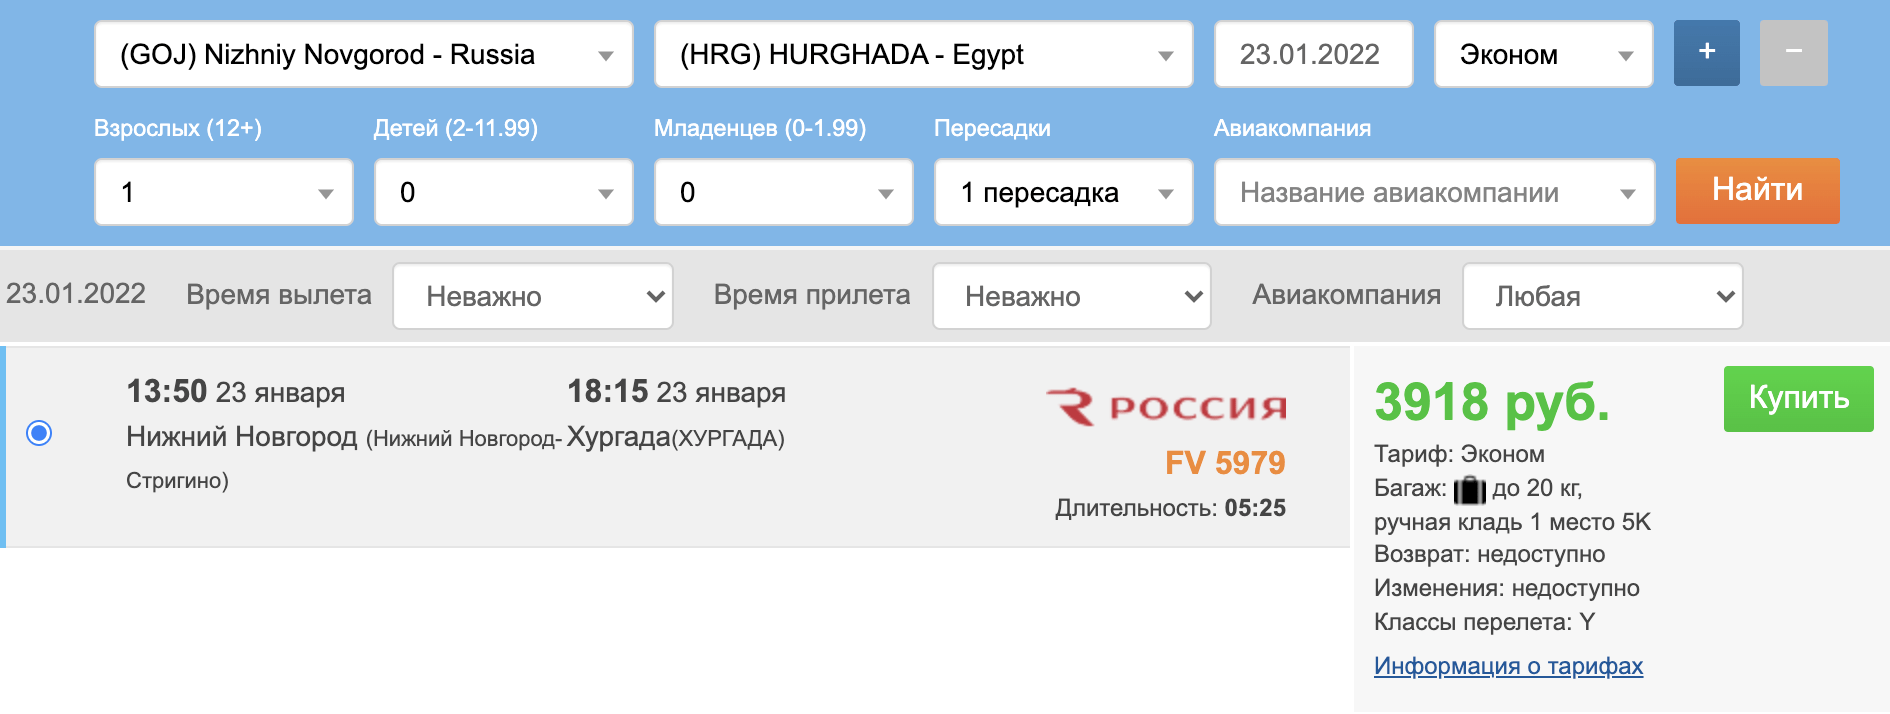 Доста евтино: чартър от Нижни Новгород до Египет (Хургада) за 8500₽ двупосочно пътуване